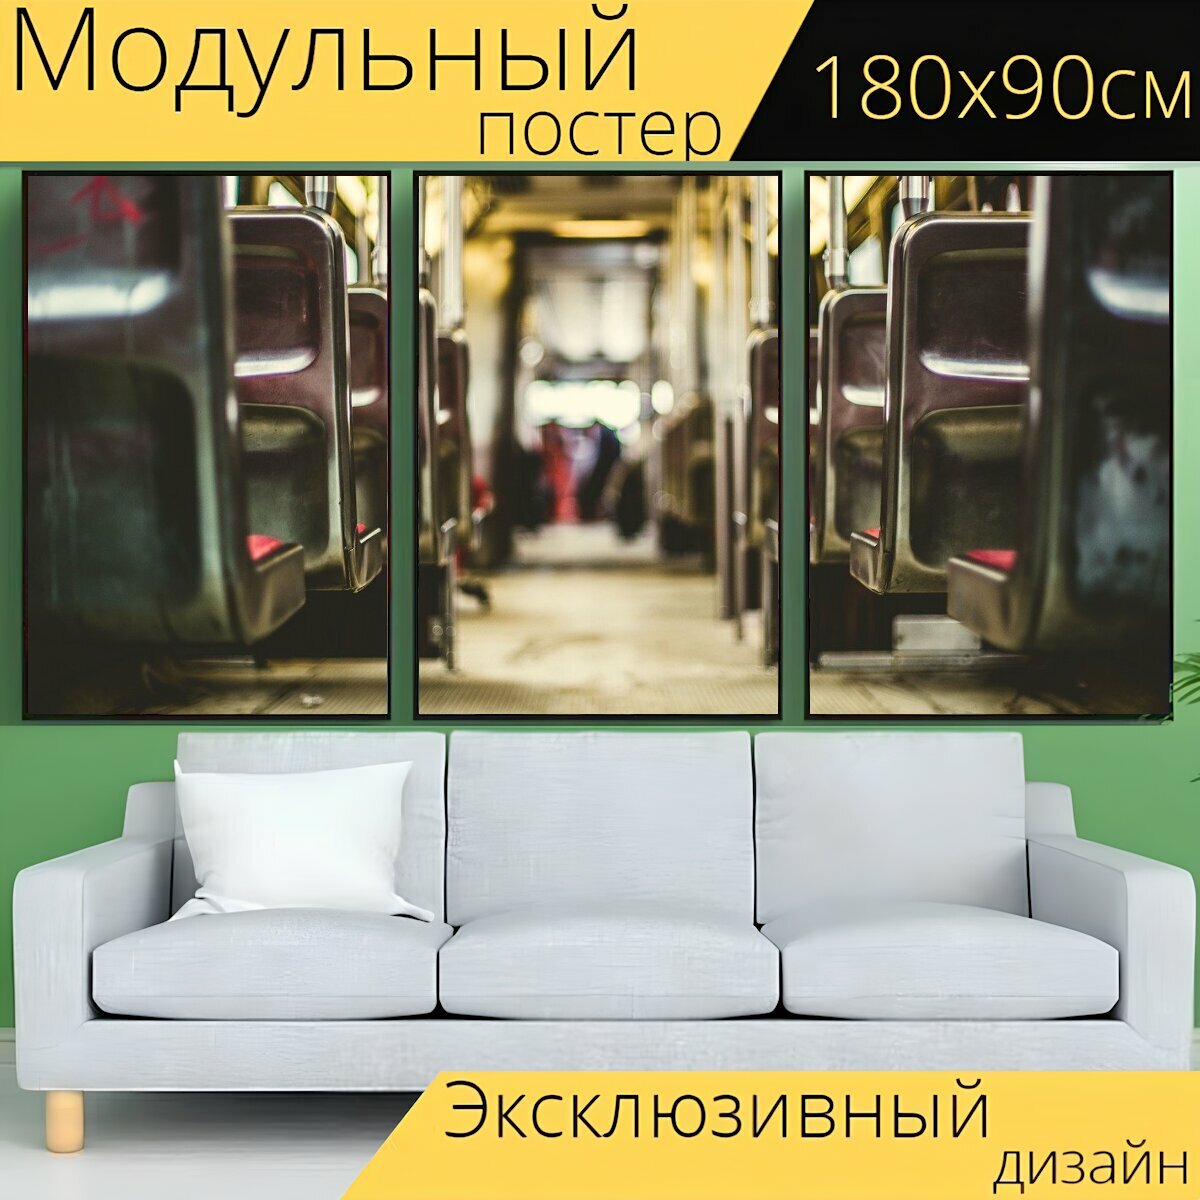 Модульный постер "Автобус, внутри, сиденья" 180 x 90 см. для интерьера